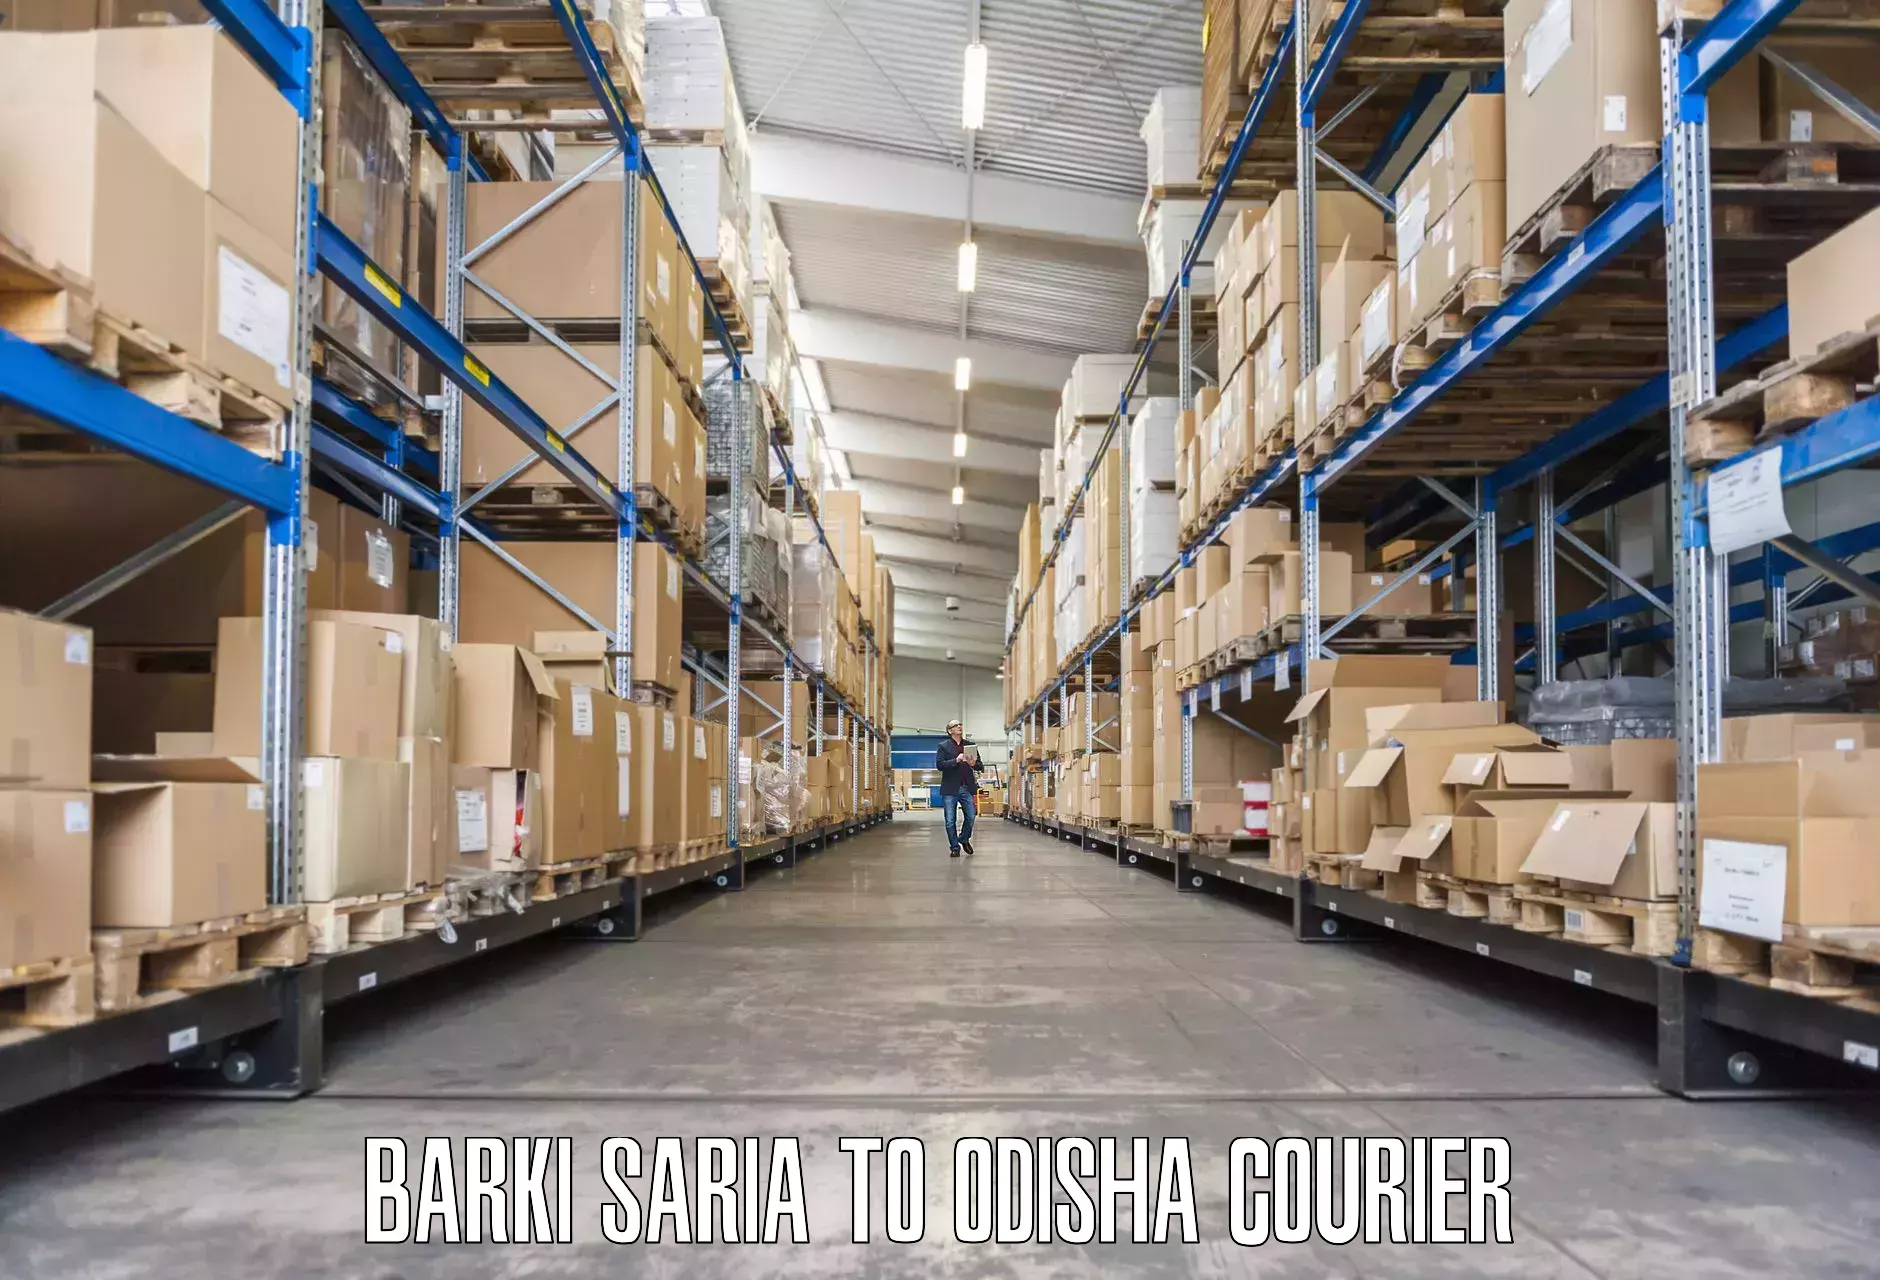 Quality furniture transport Barki Saria to Baleswar